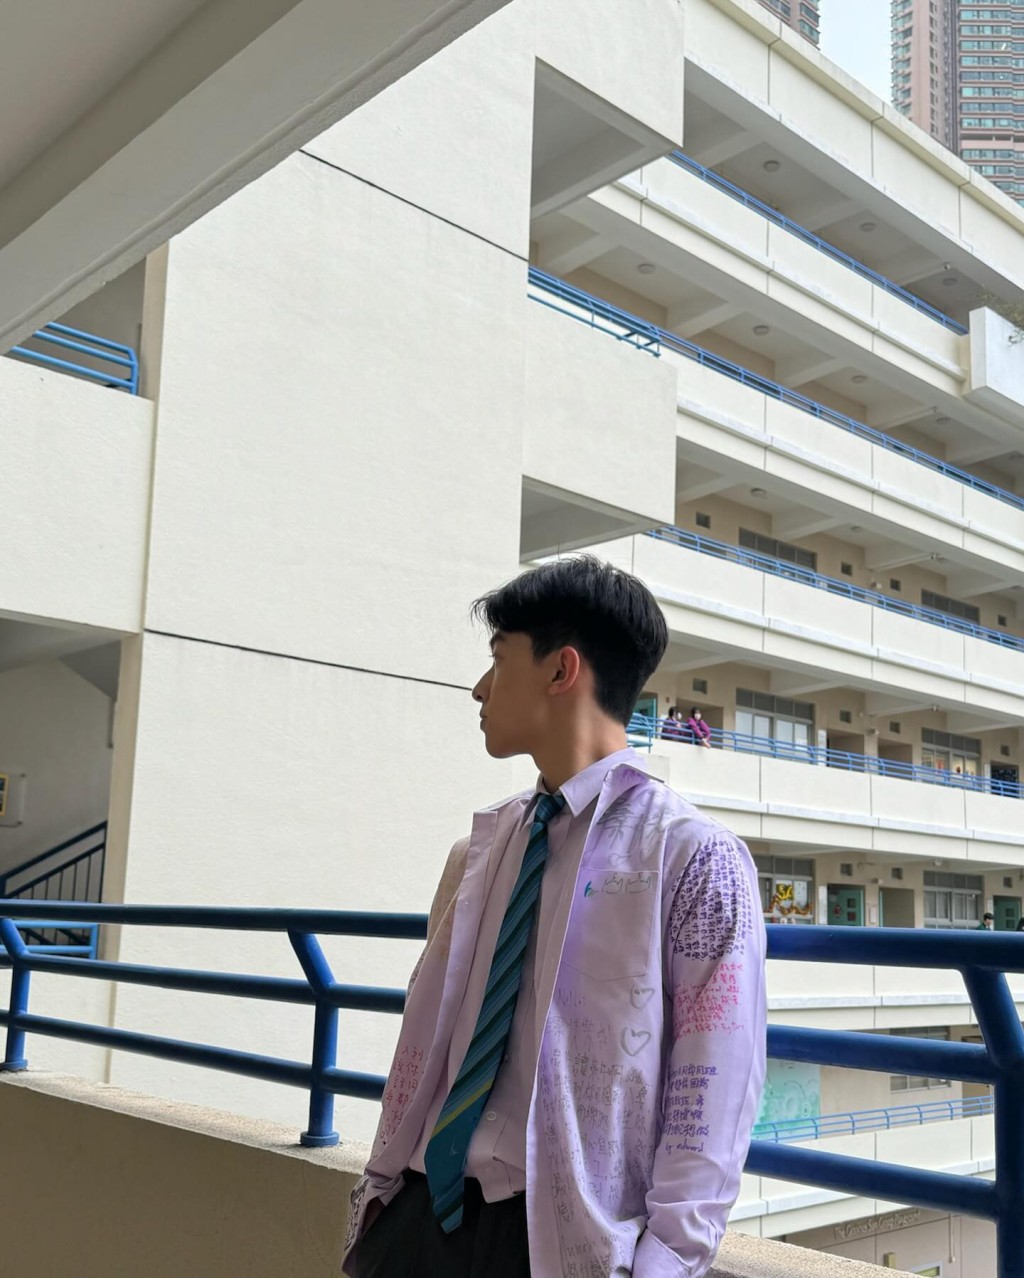 杨凯博近日在IG分享三张校园生活照，可见其校服写满同学仔留言字句。